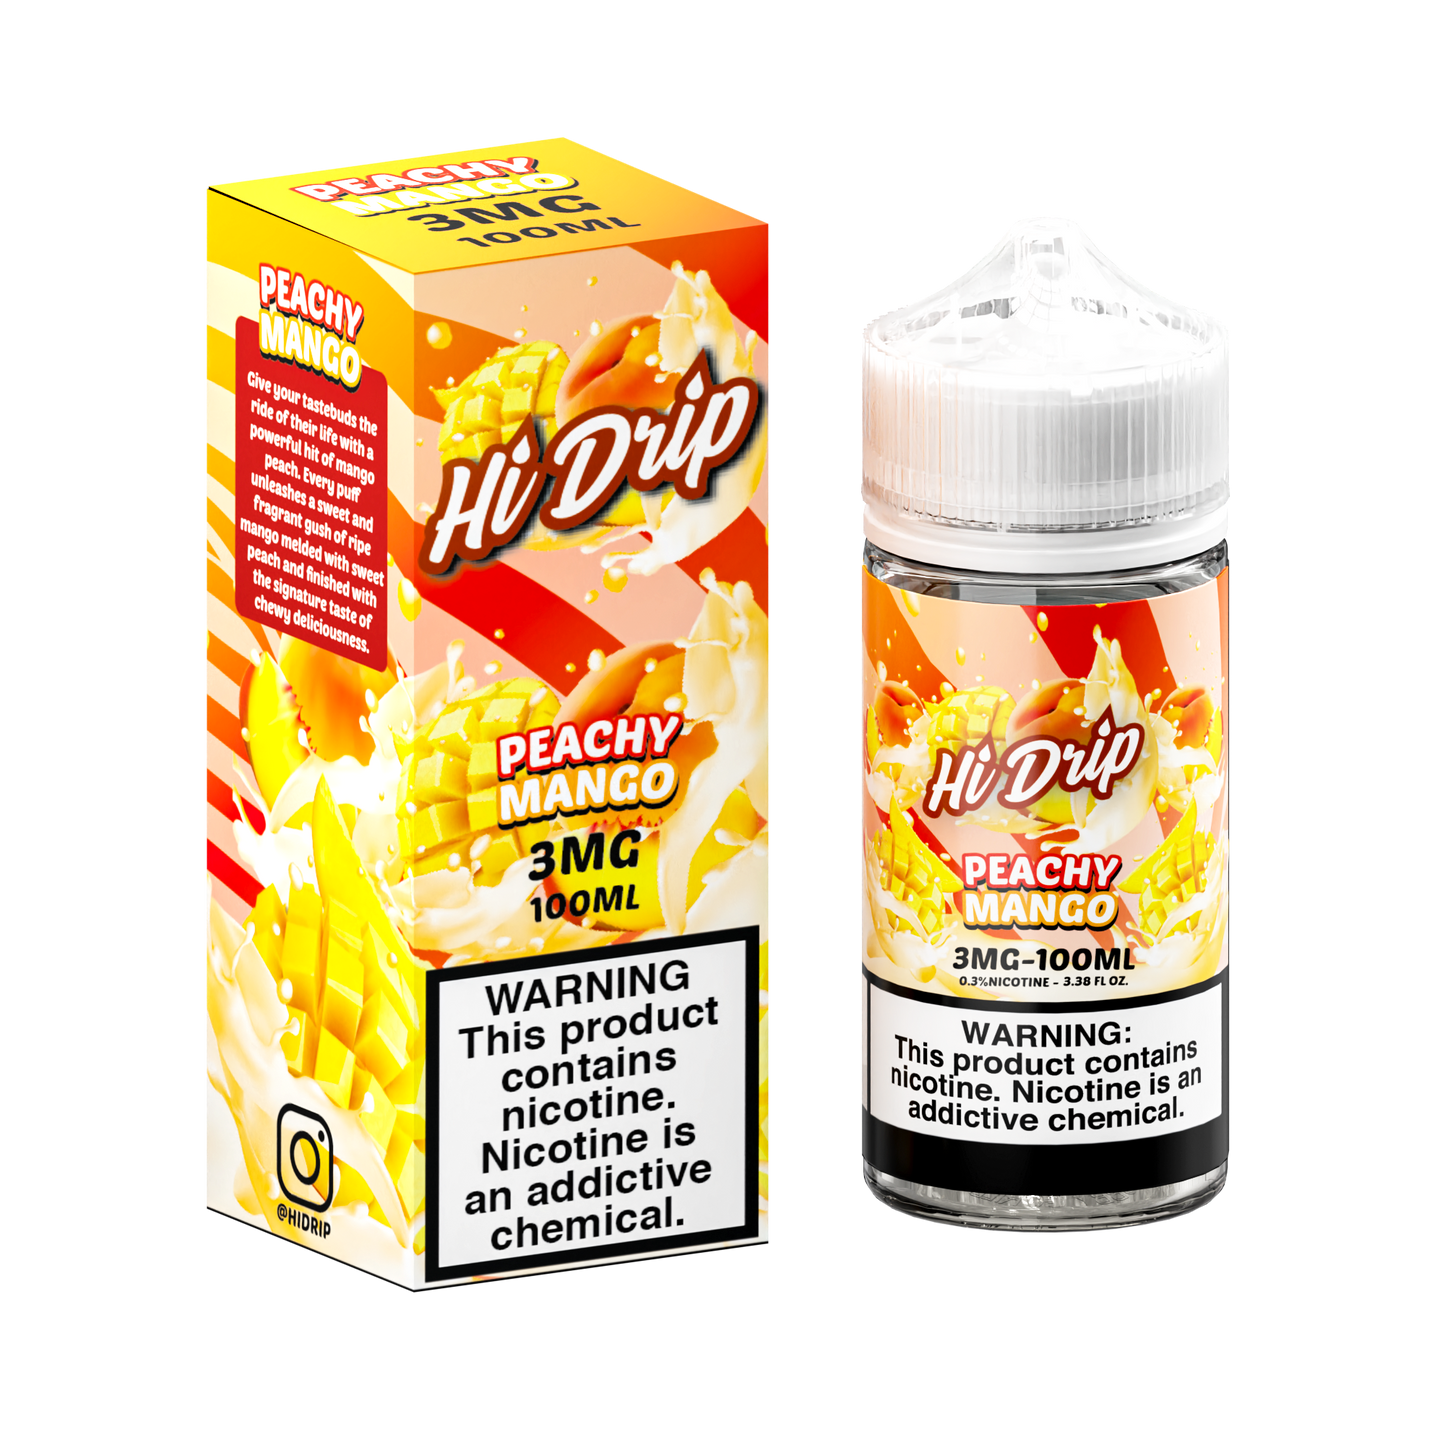 Hi-Drip Series E-Liquid 100mL (Freebase) | Peachy Mango with packaging